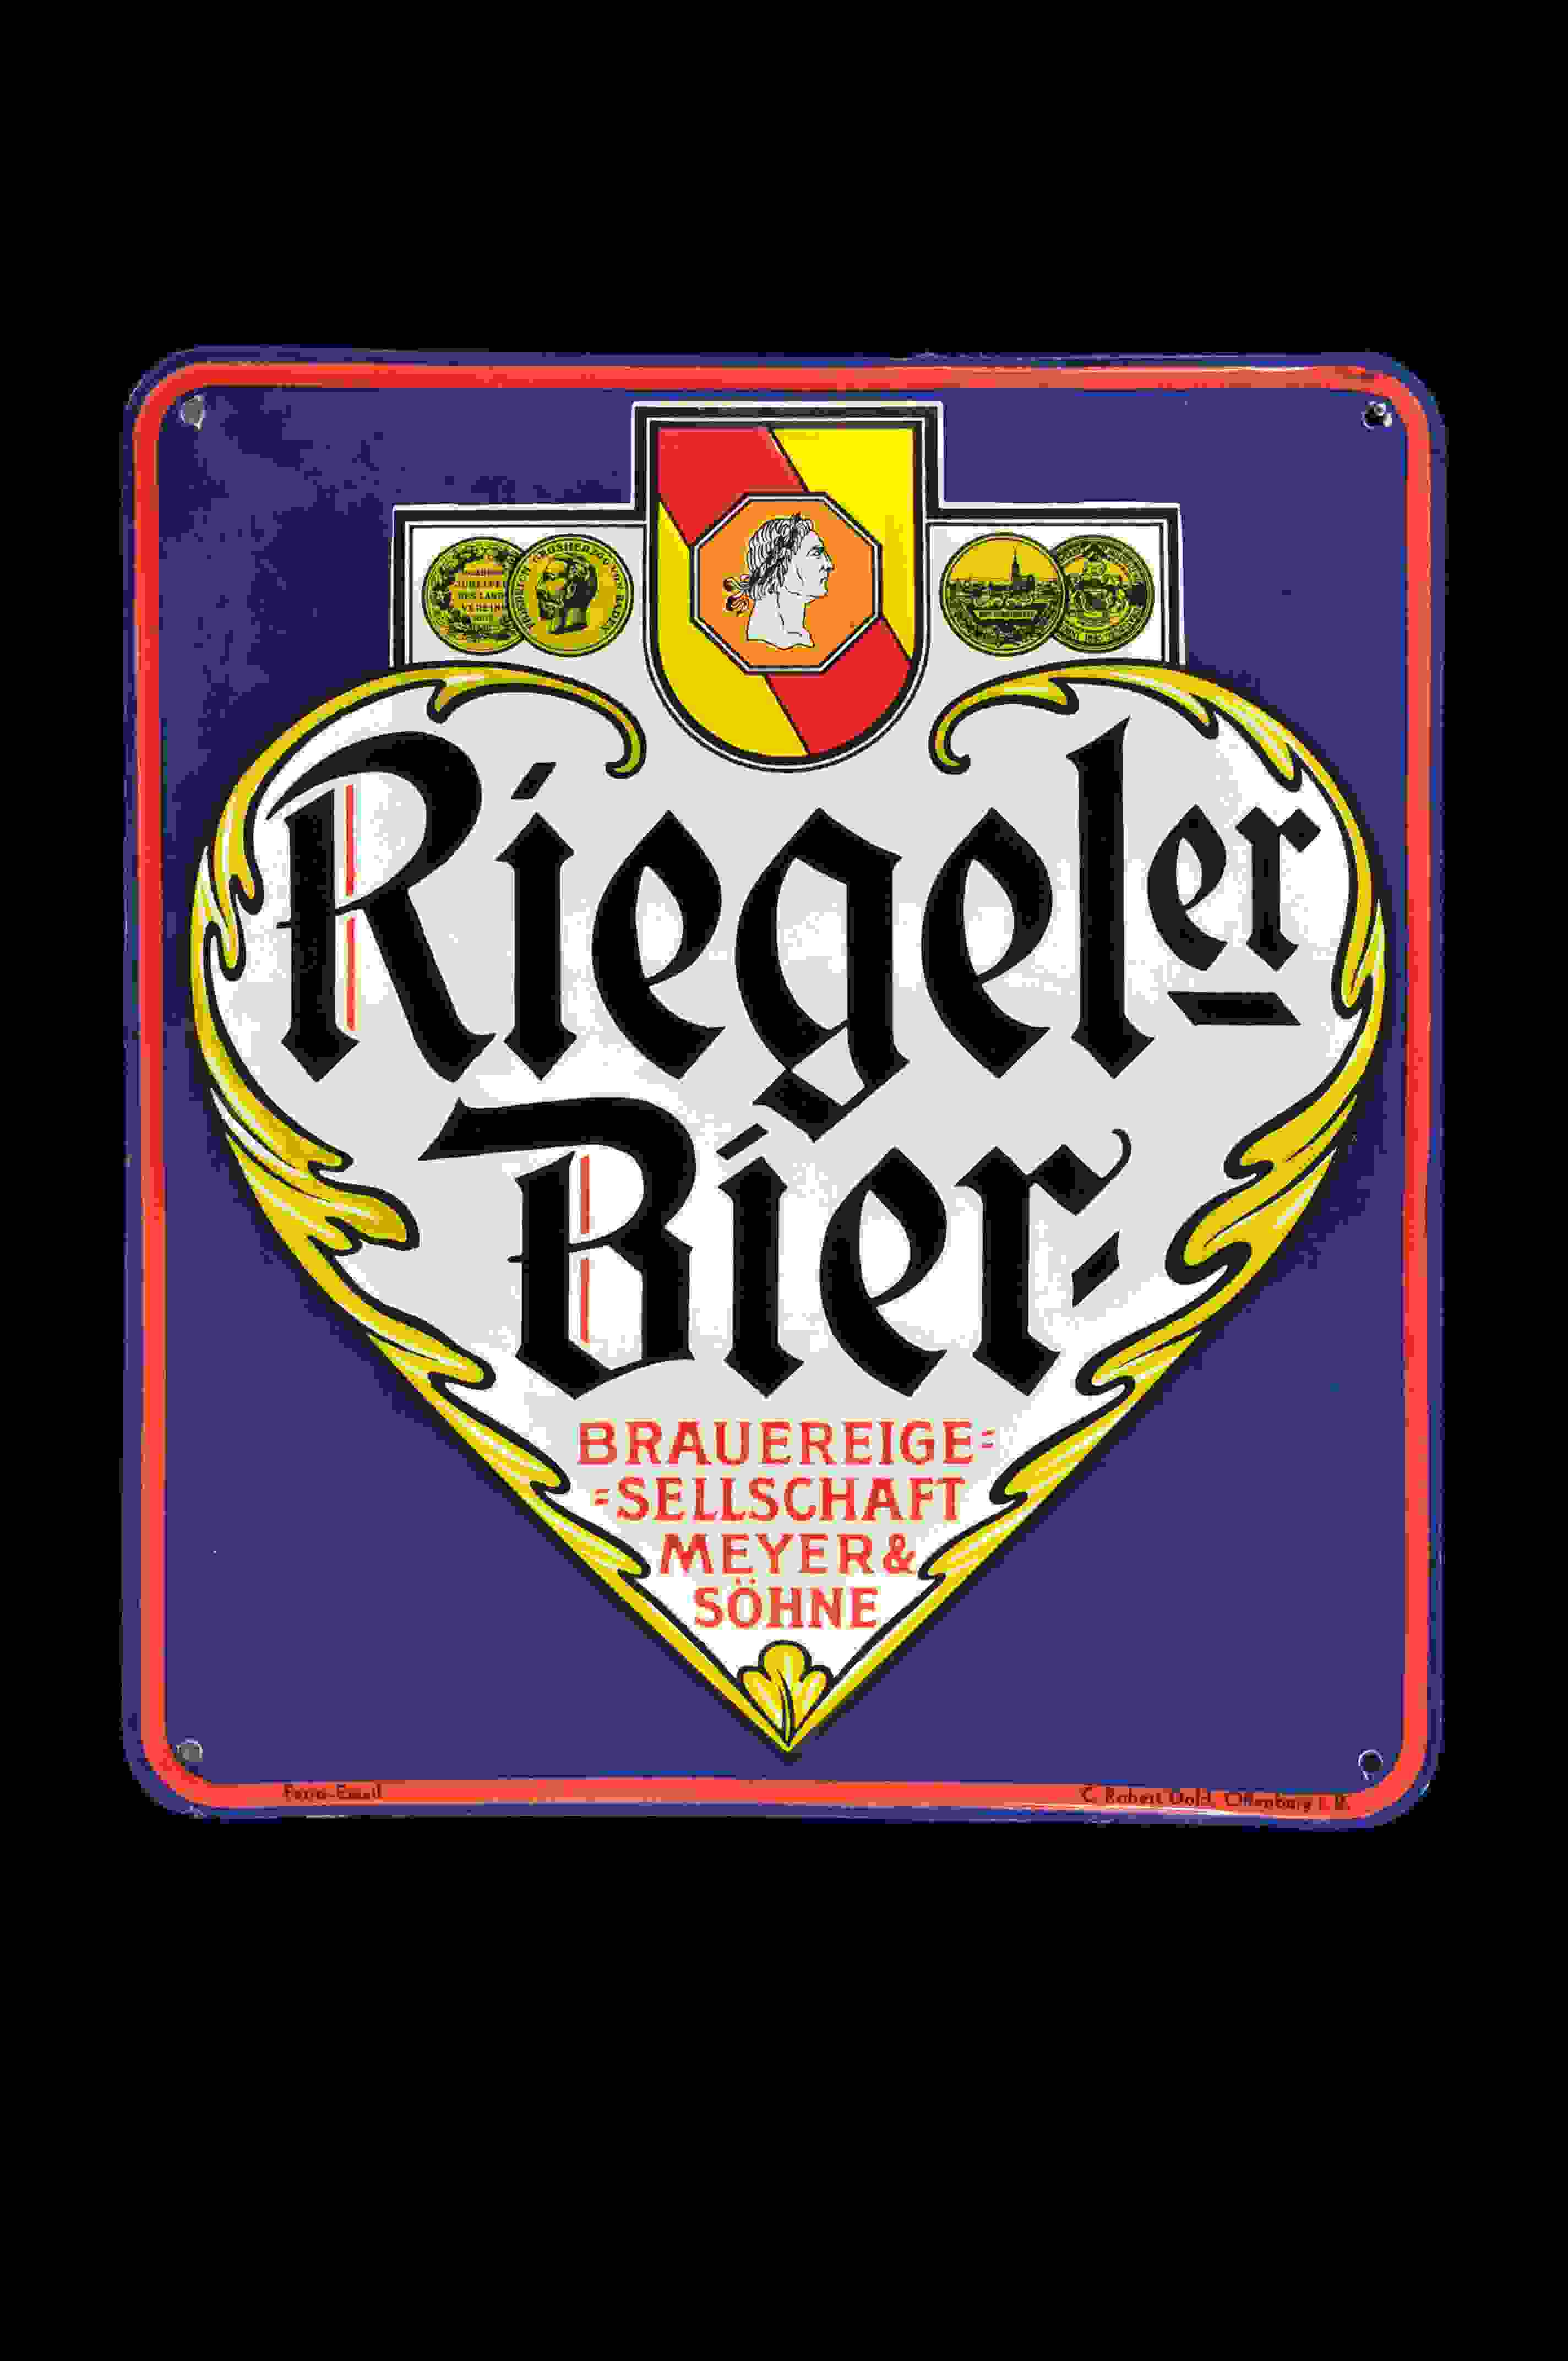 Riegeler Bier 